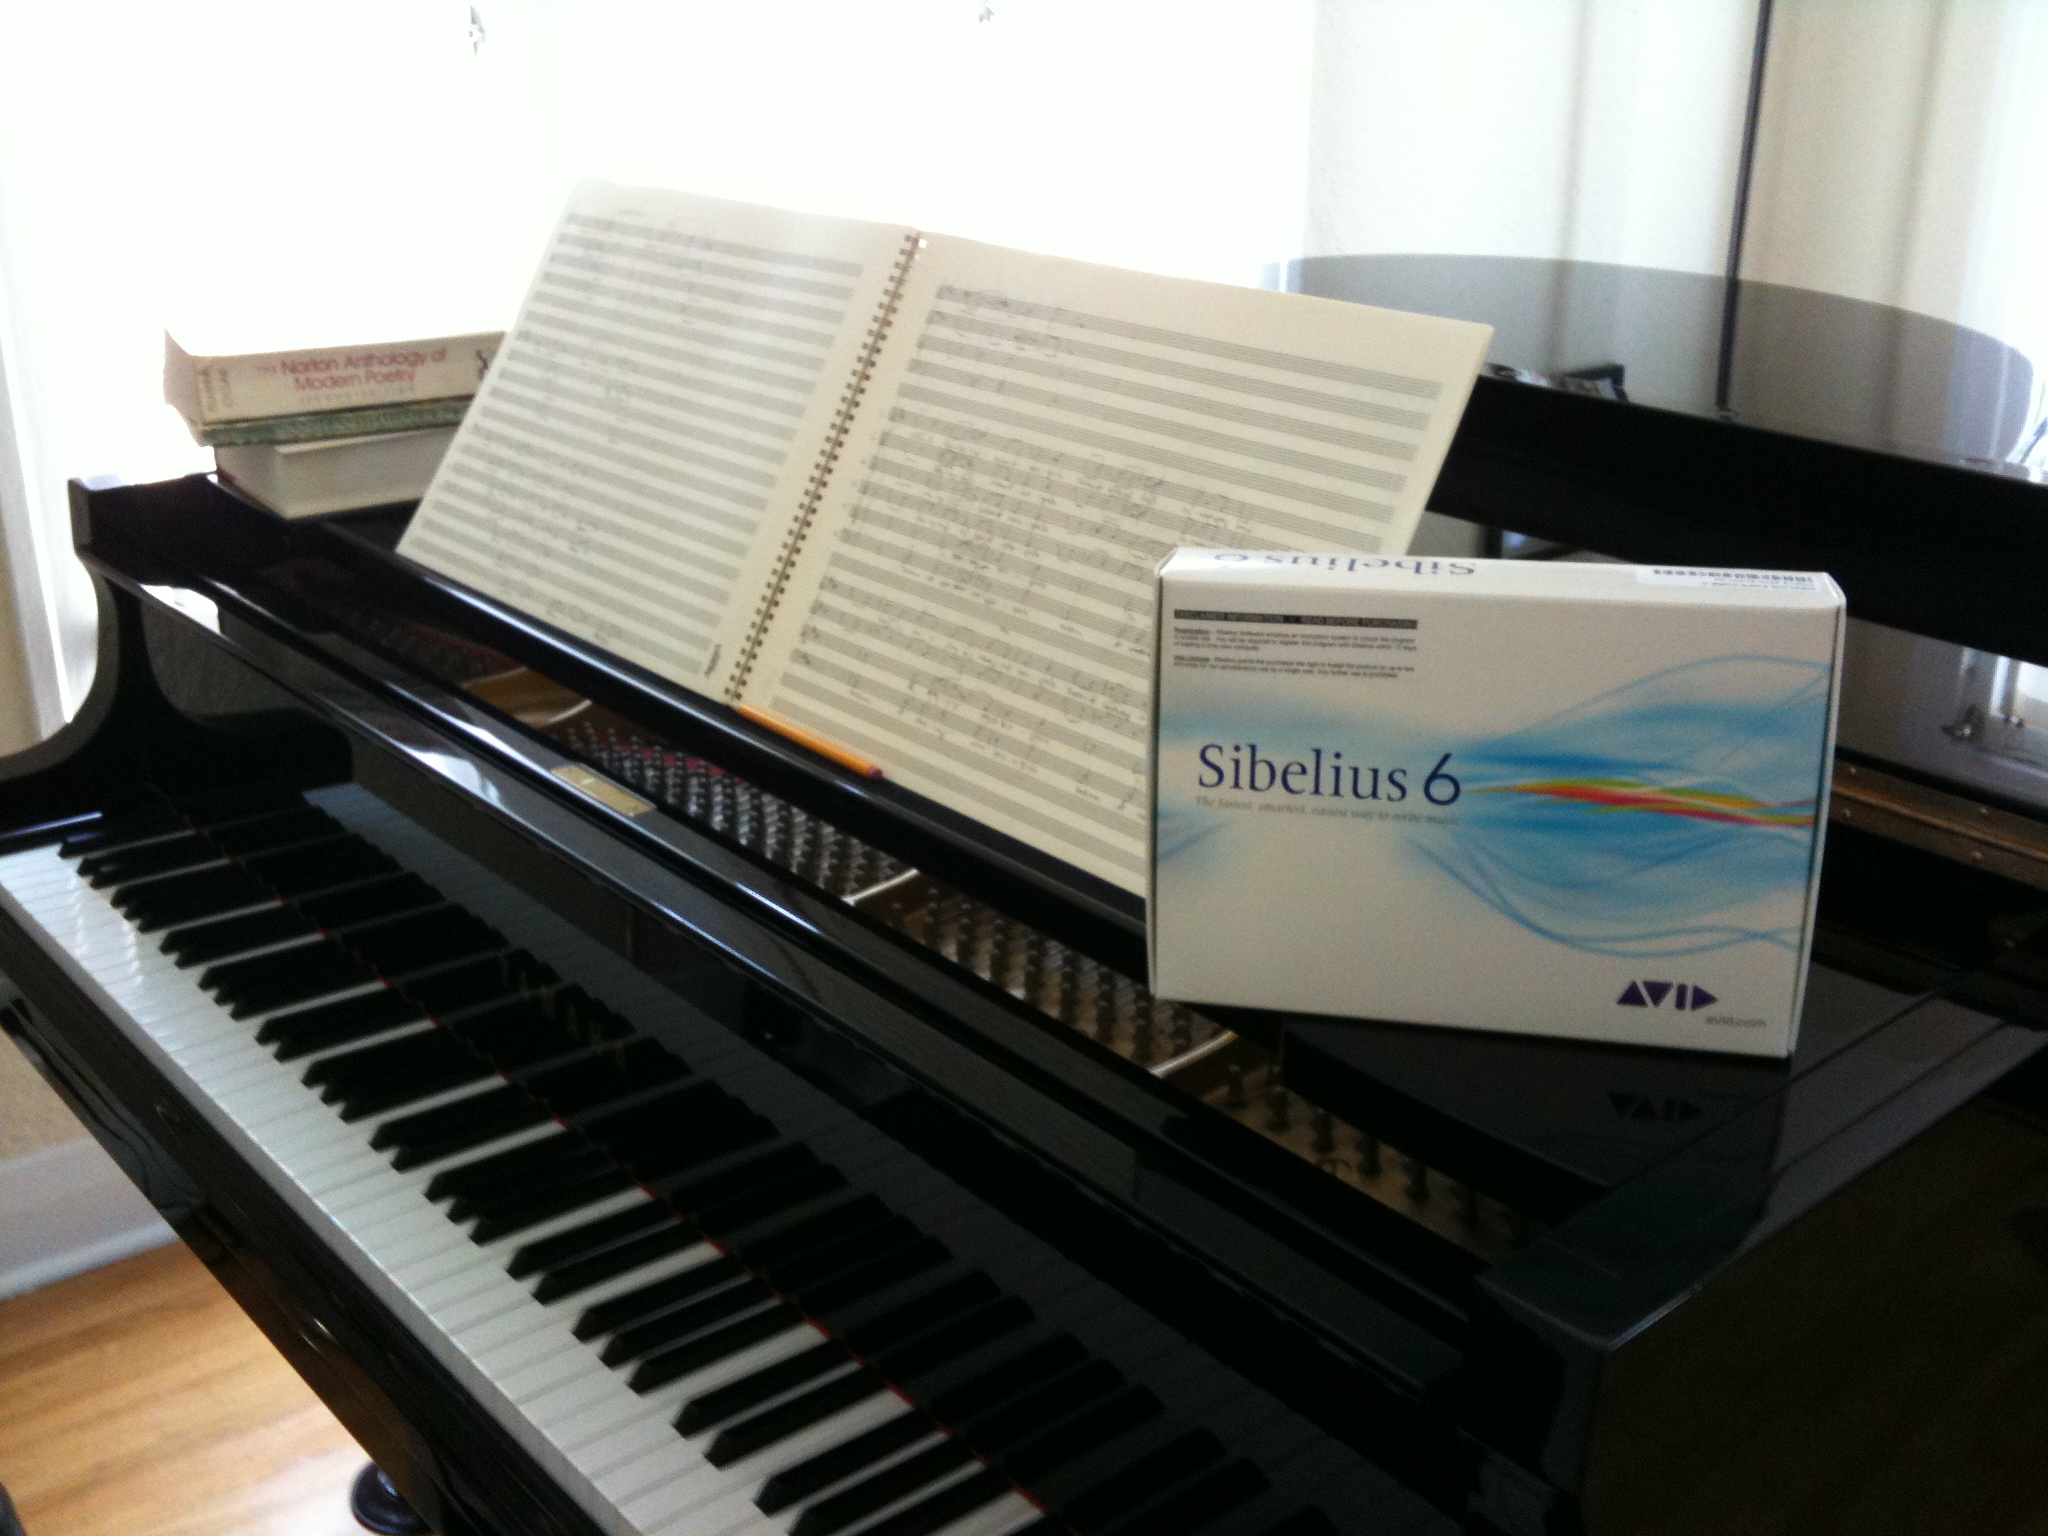 Sibelius on the piano